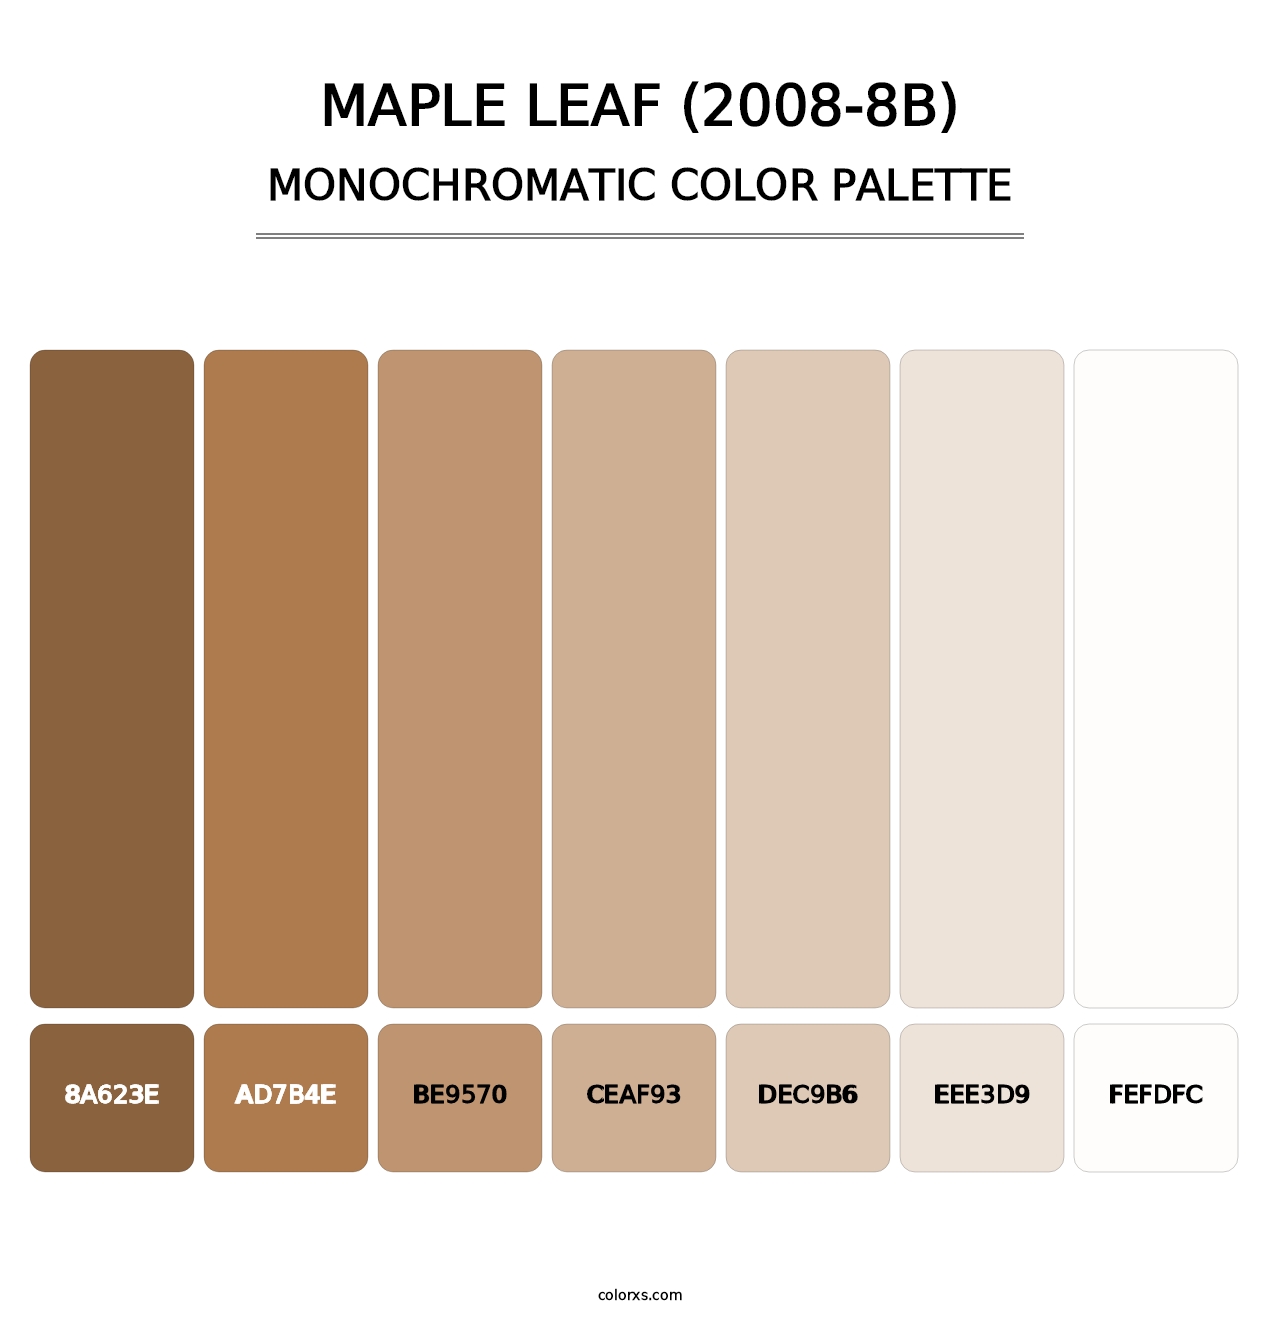 Maple Leaf (2008-8B) - Monochromatic Color Palette